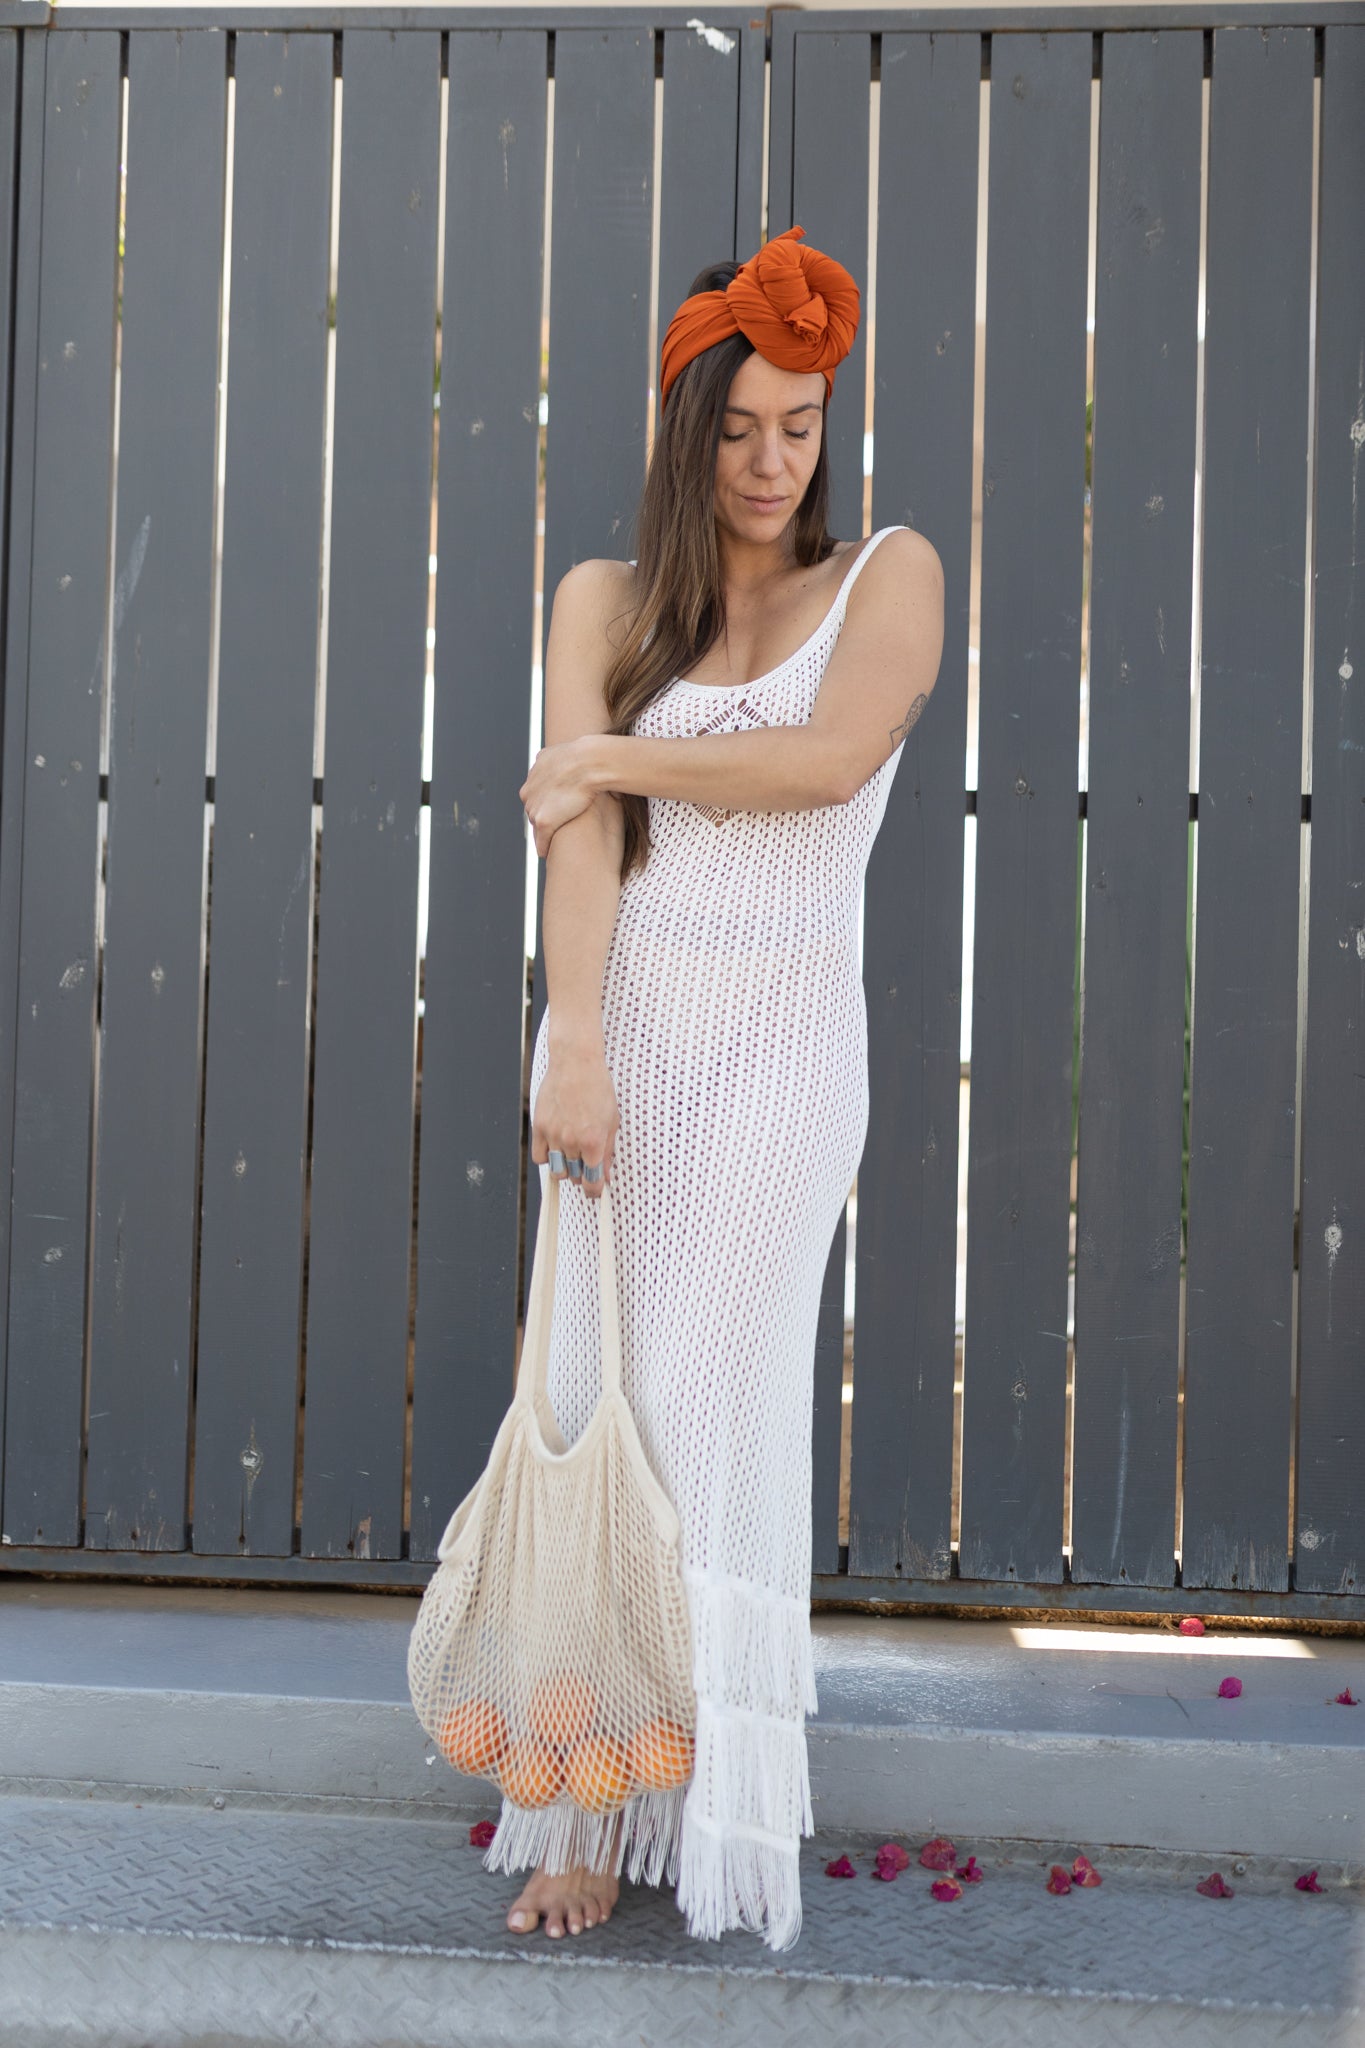 λευκο φορεμα με κροσσια- beachwear - fitmeup.gr